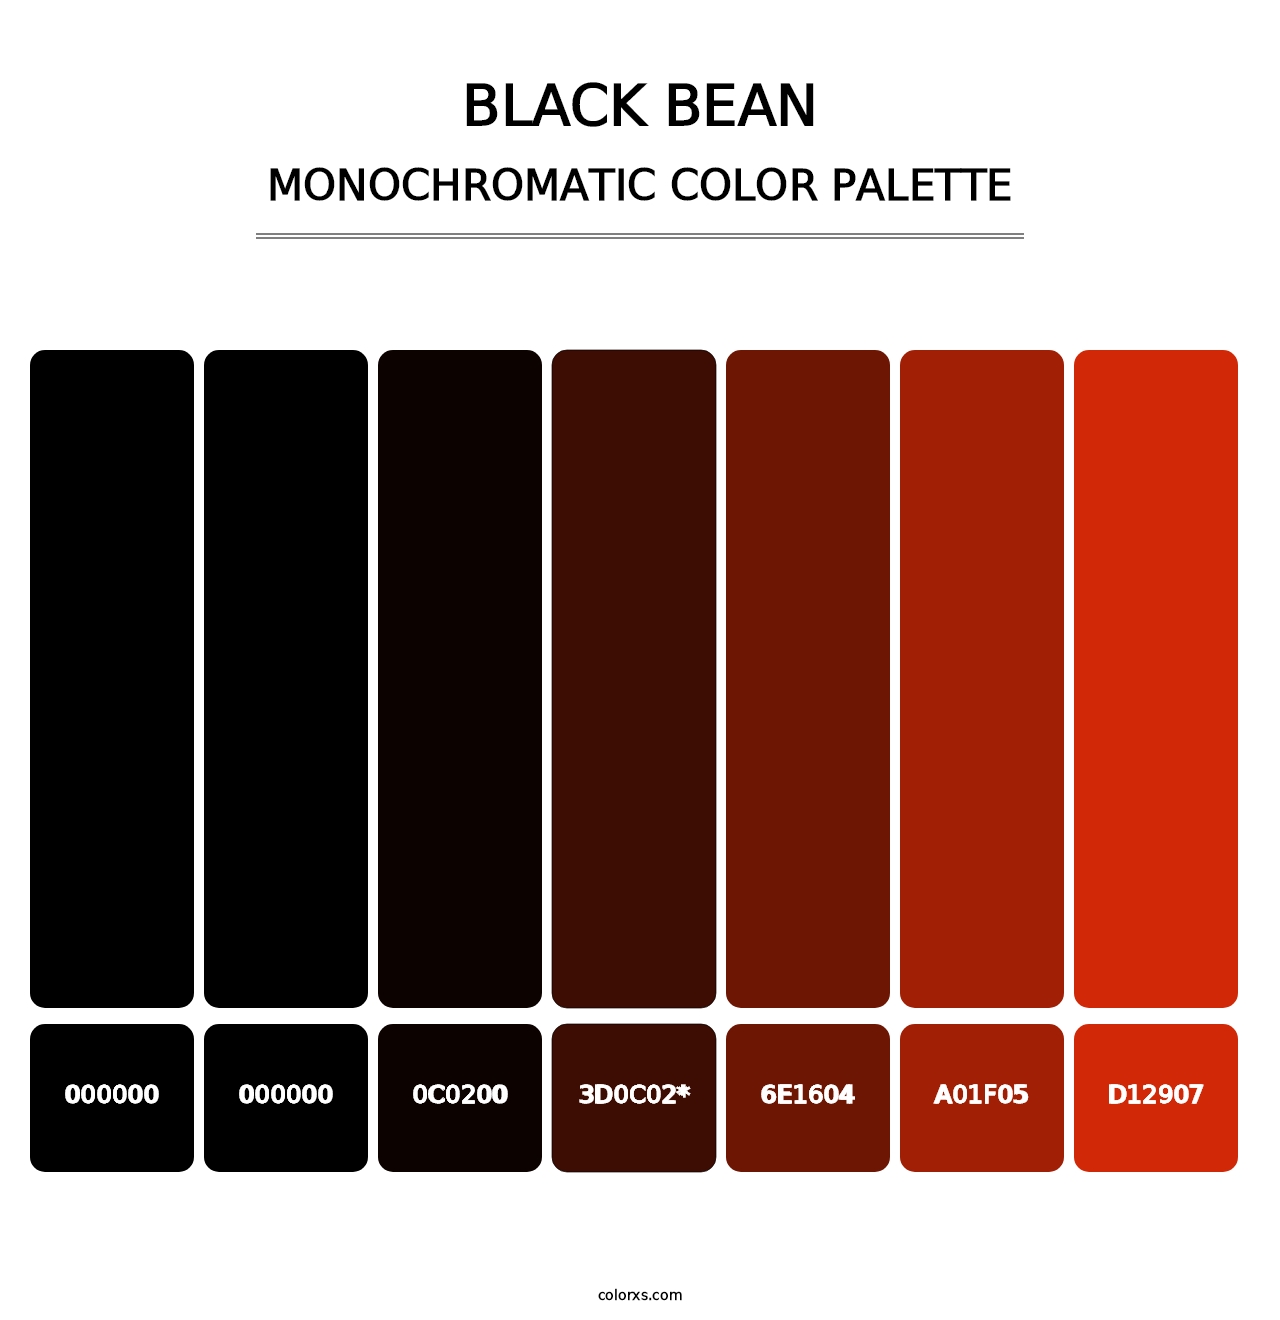 Black Bean - Monochromatic Color Palette